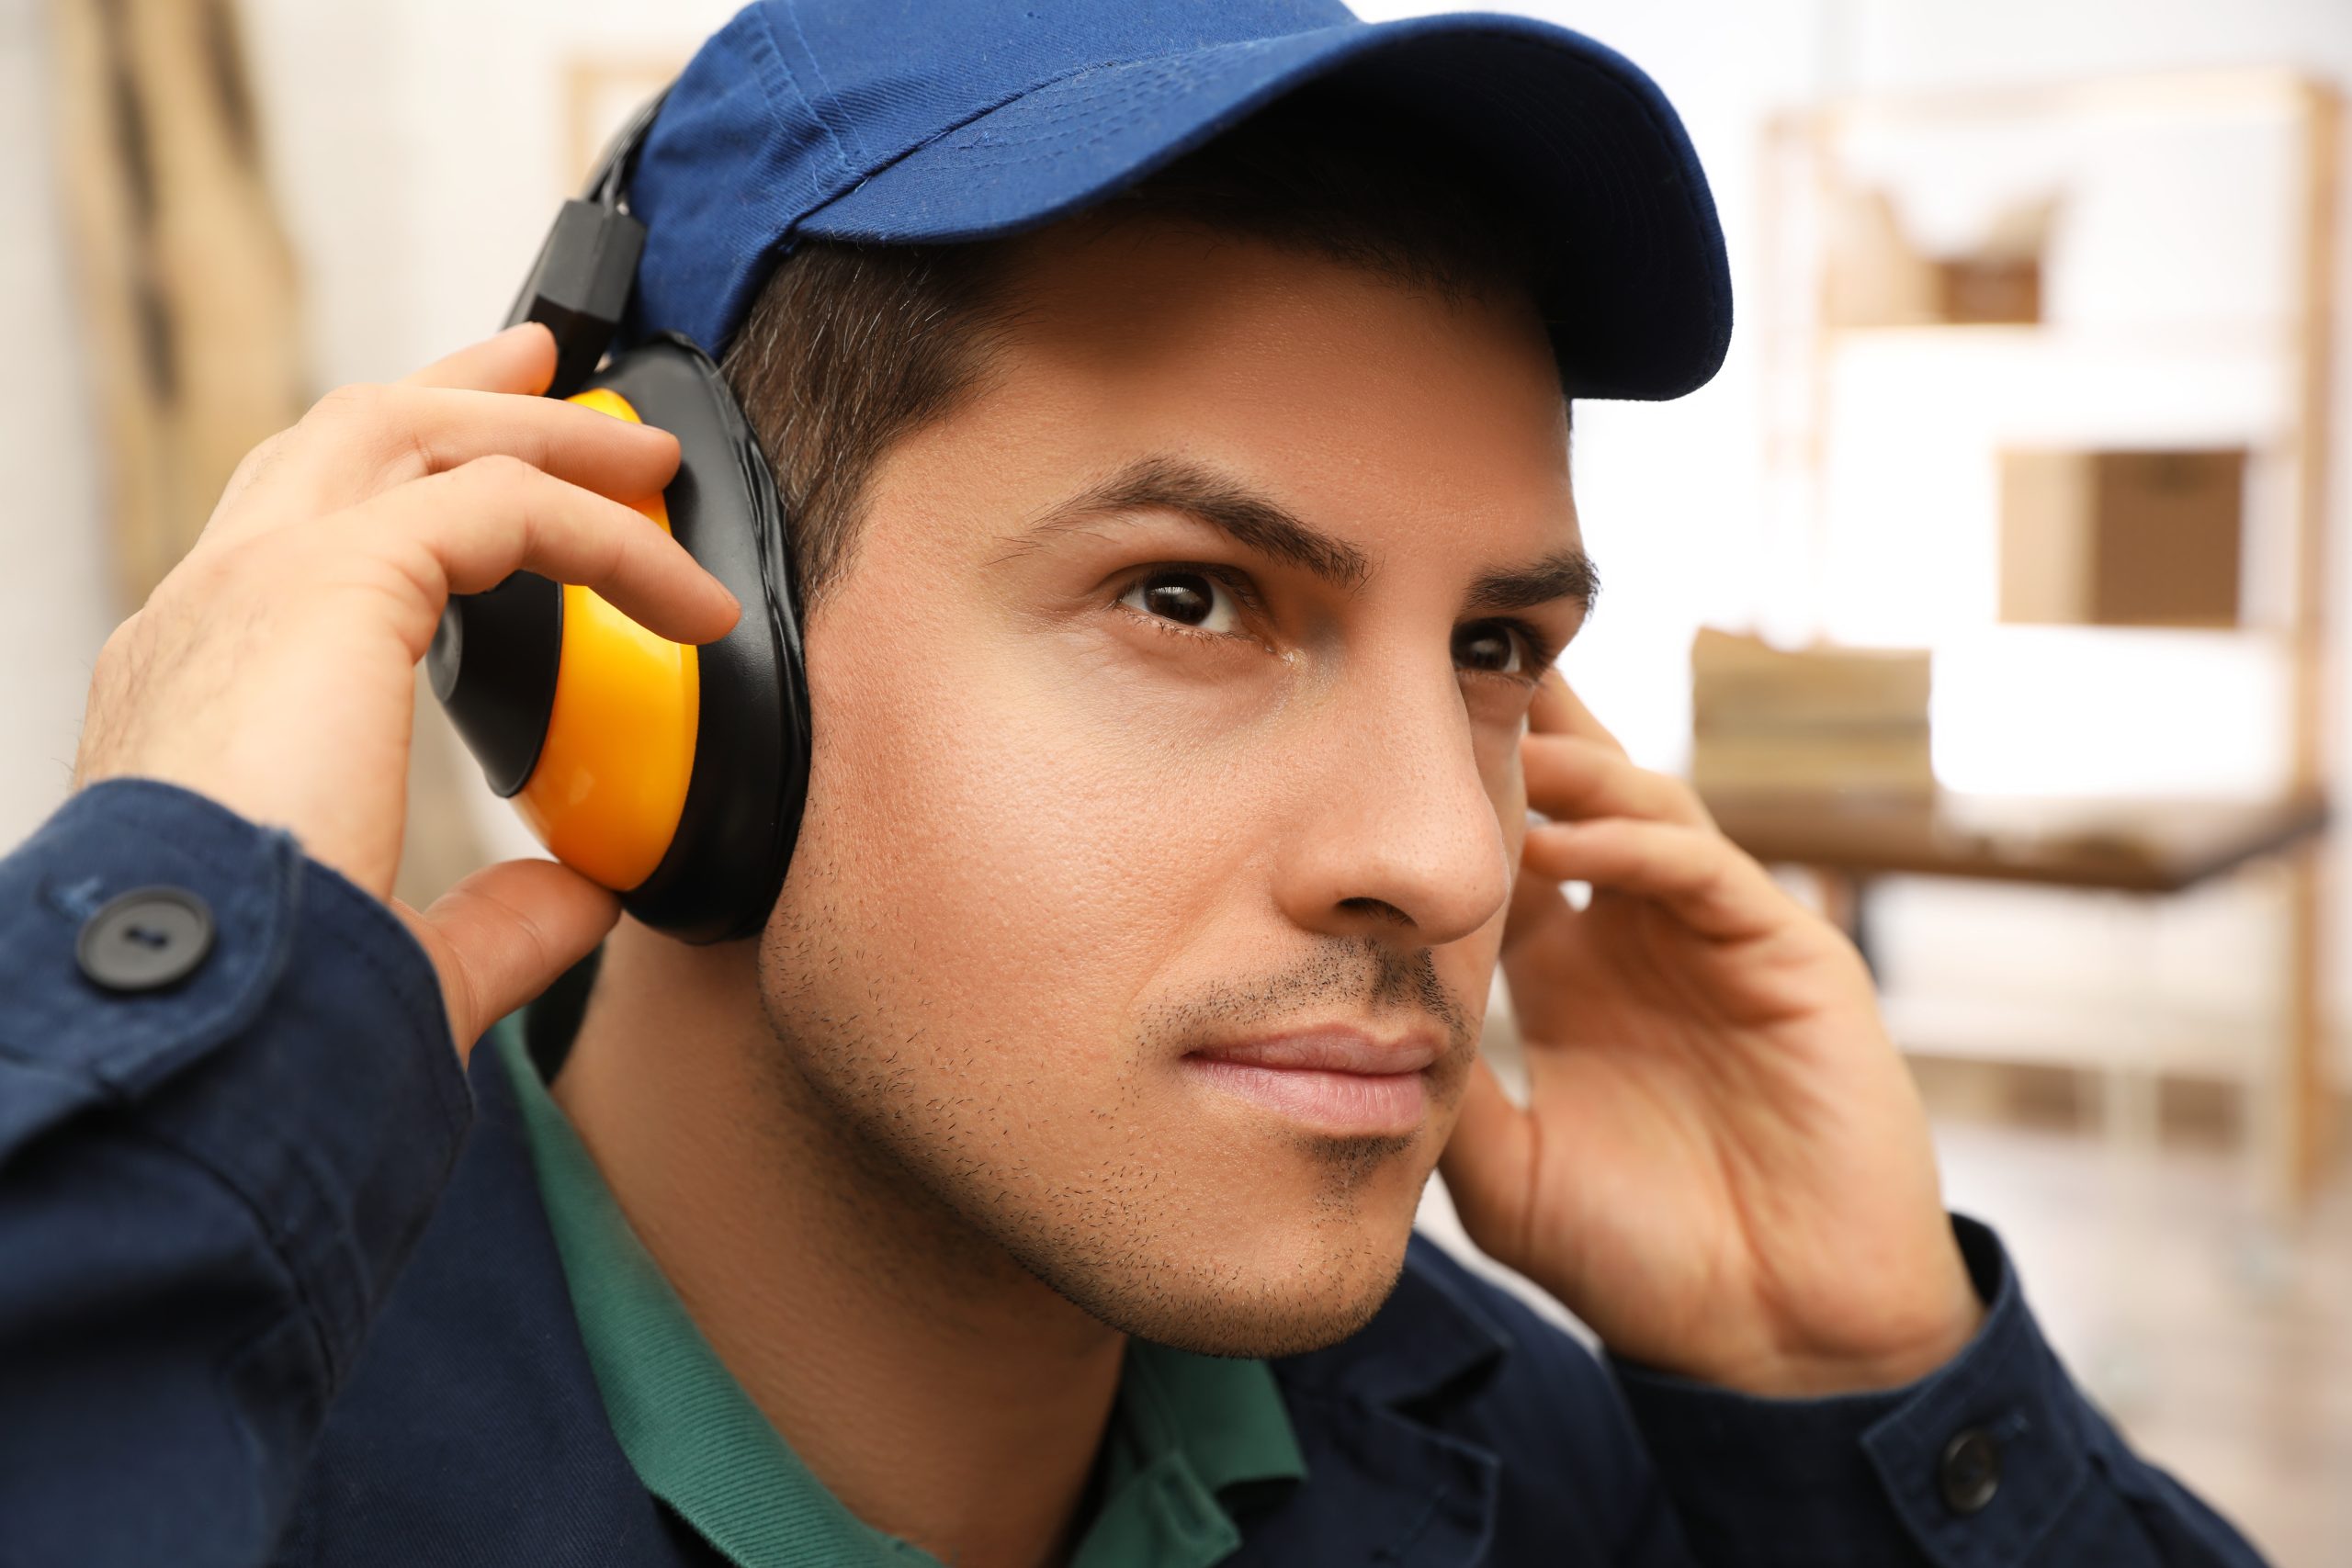 Protector auditivo - Evitar el ruido en el entorno laboral